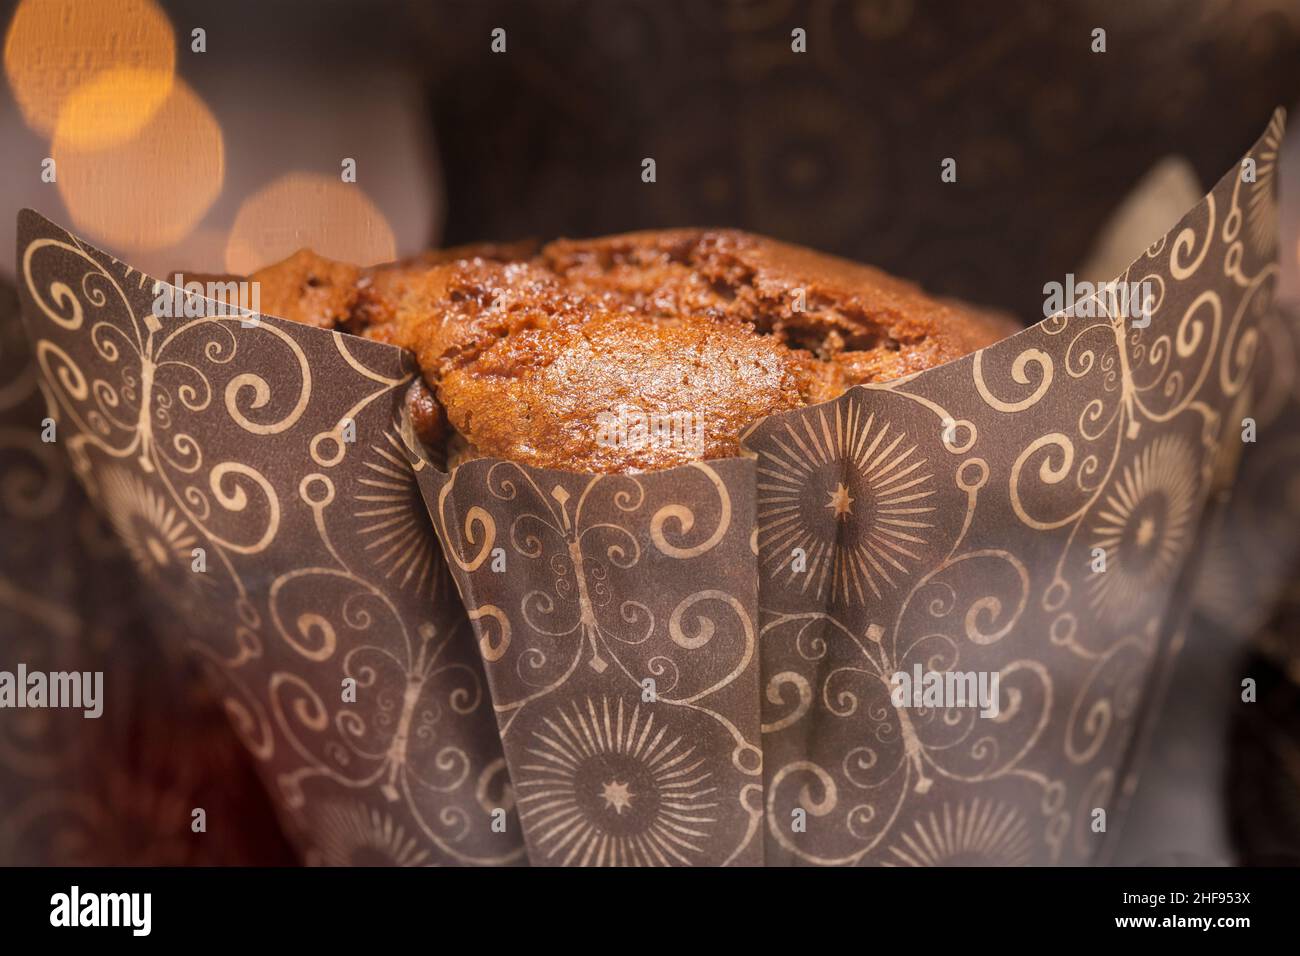 Muffins au chocolat et à la vanille emballés dans un café local Banque D'Images